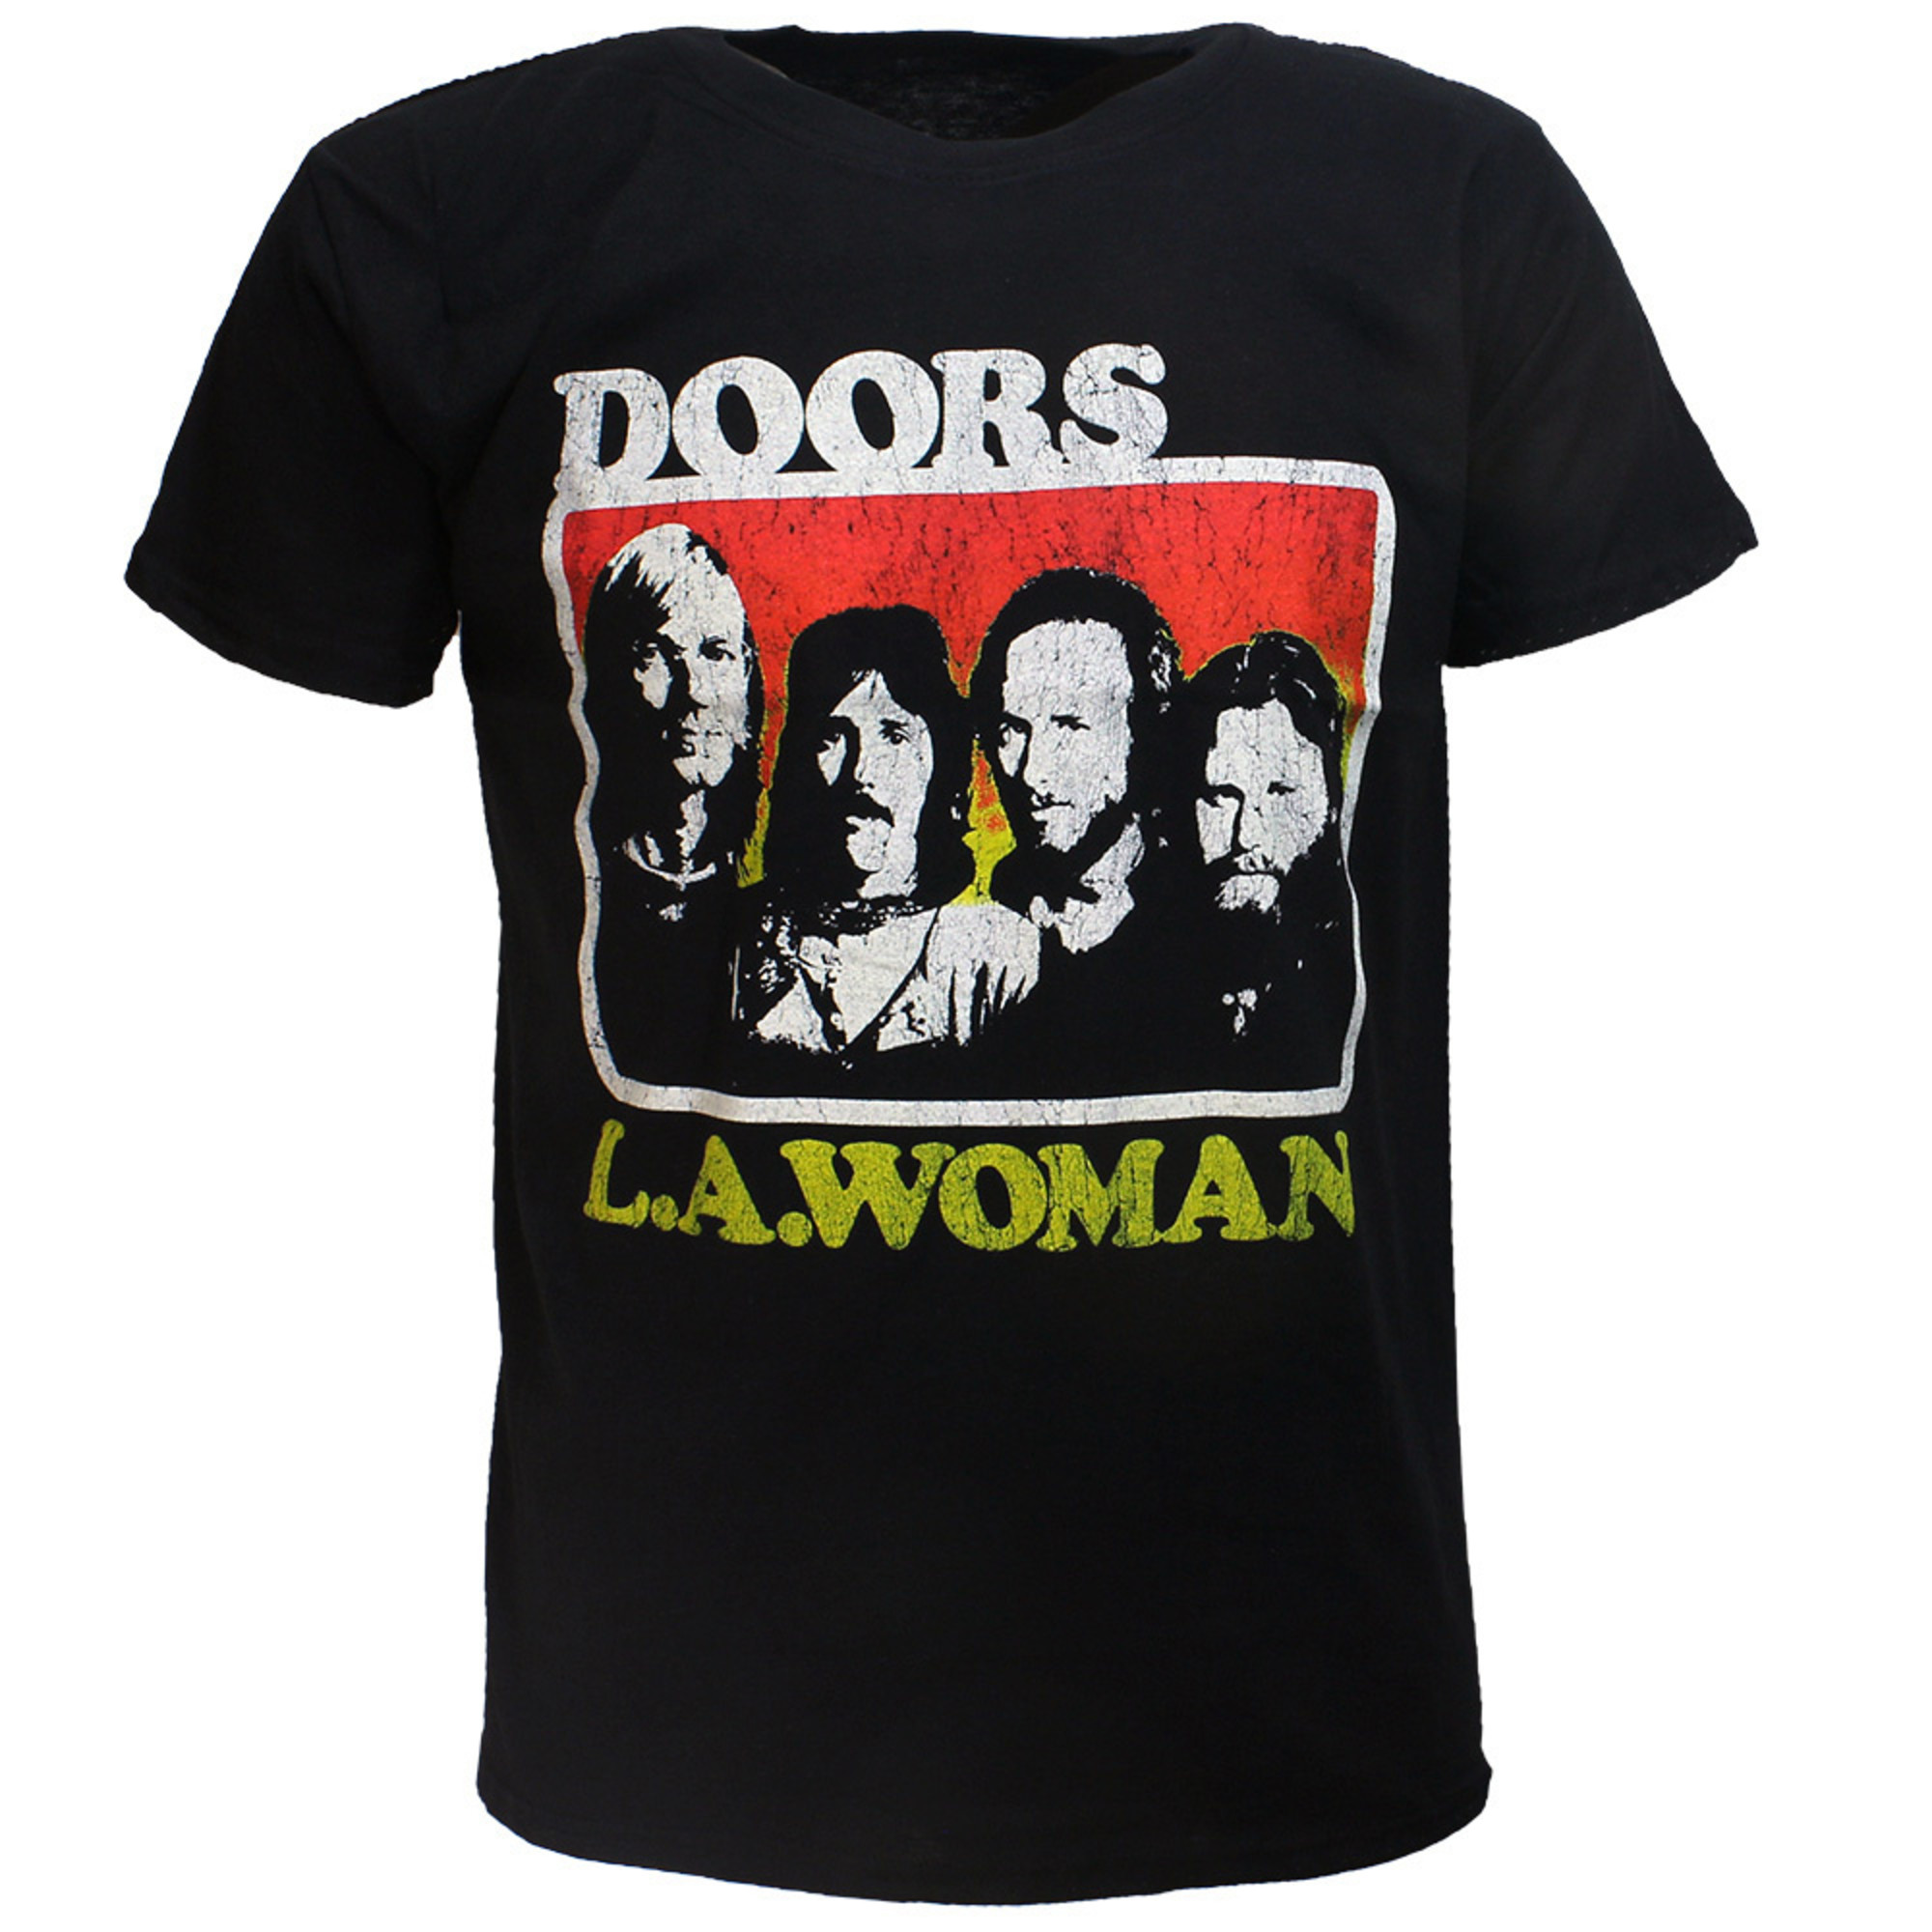 The Doors L.A. Woman T-Shirt Black - Popmerch.com